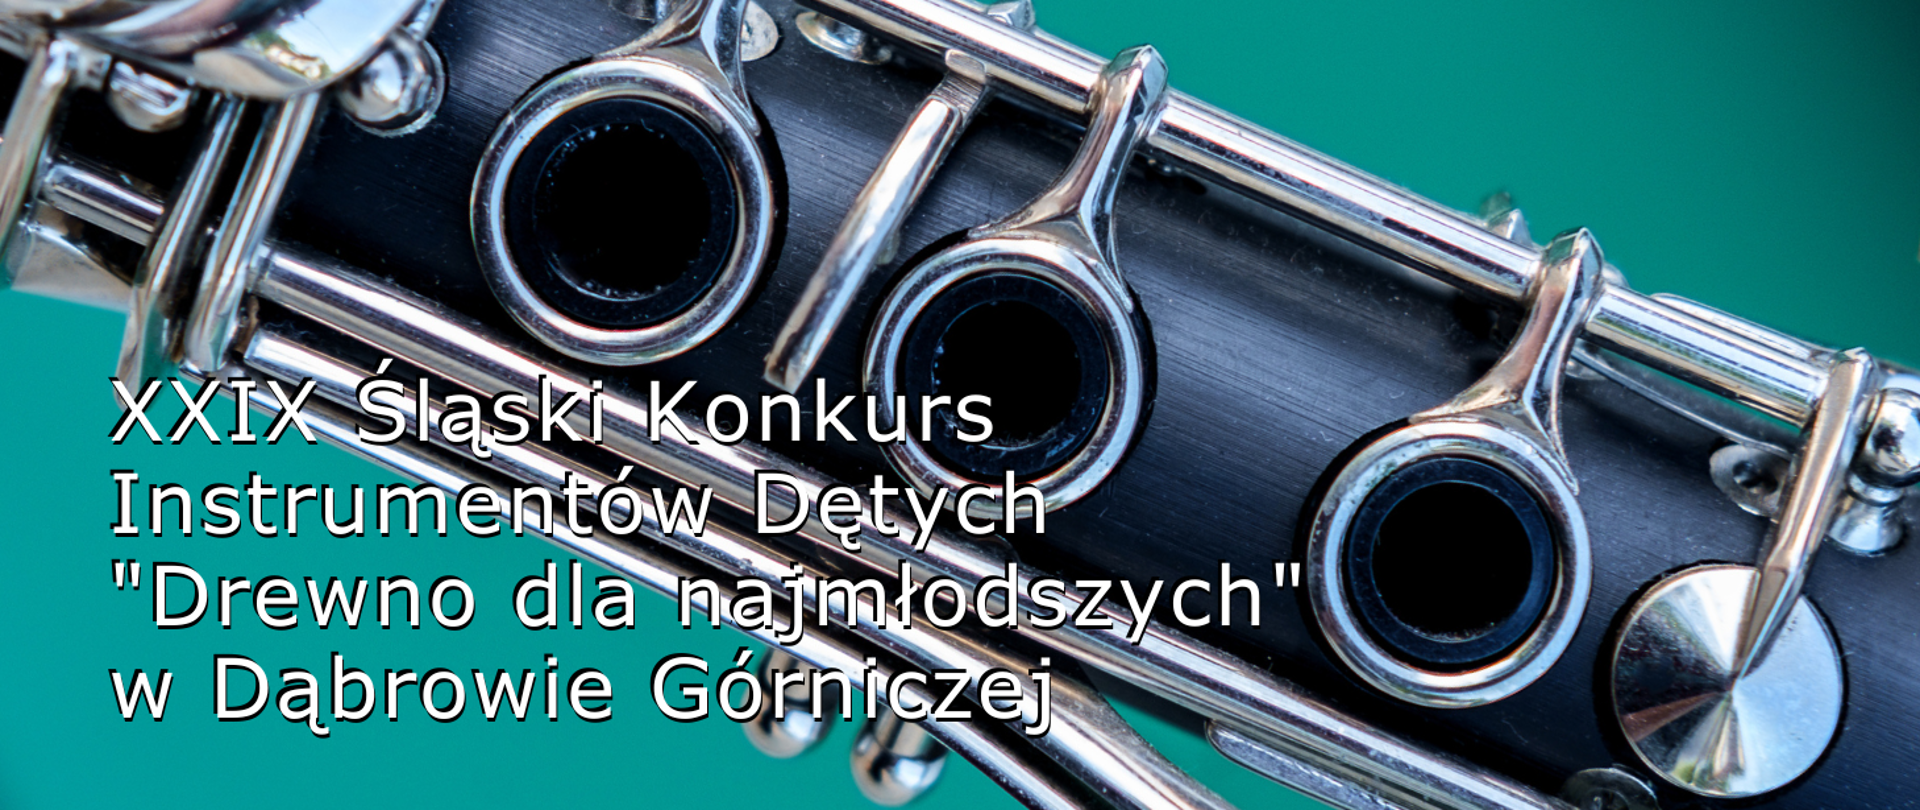 Kolorowe zdjęcie środkowej części klarnetu z klapkami, znajdującego się na turkusowym tle. W lewym dolnym rogu biały napis XXIX Śląski Konkurs Instrumentów Dętych "Drewno dla najmłodszych" w Dąbrowie Górniczej